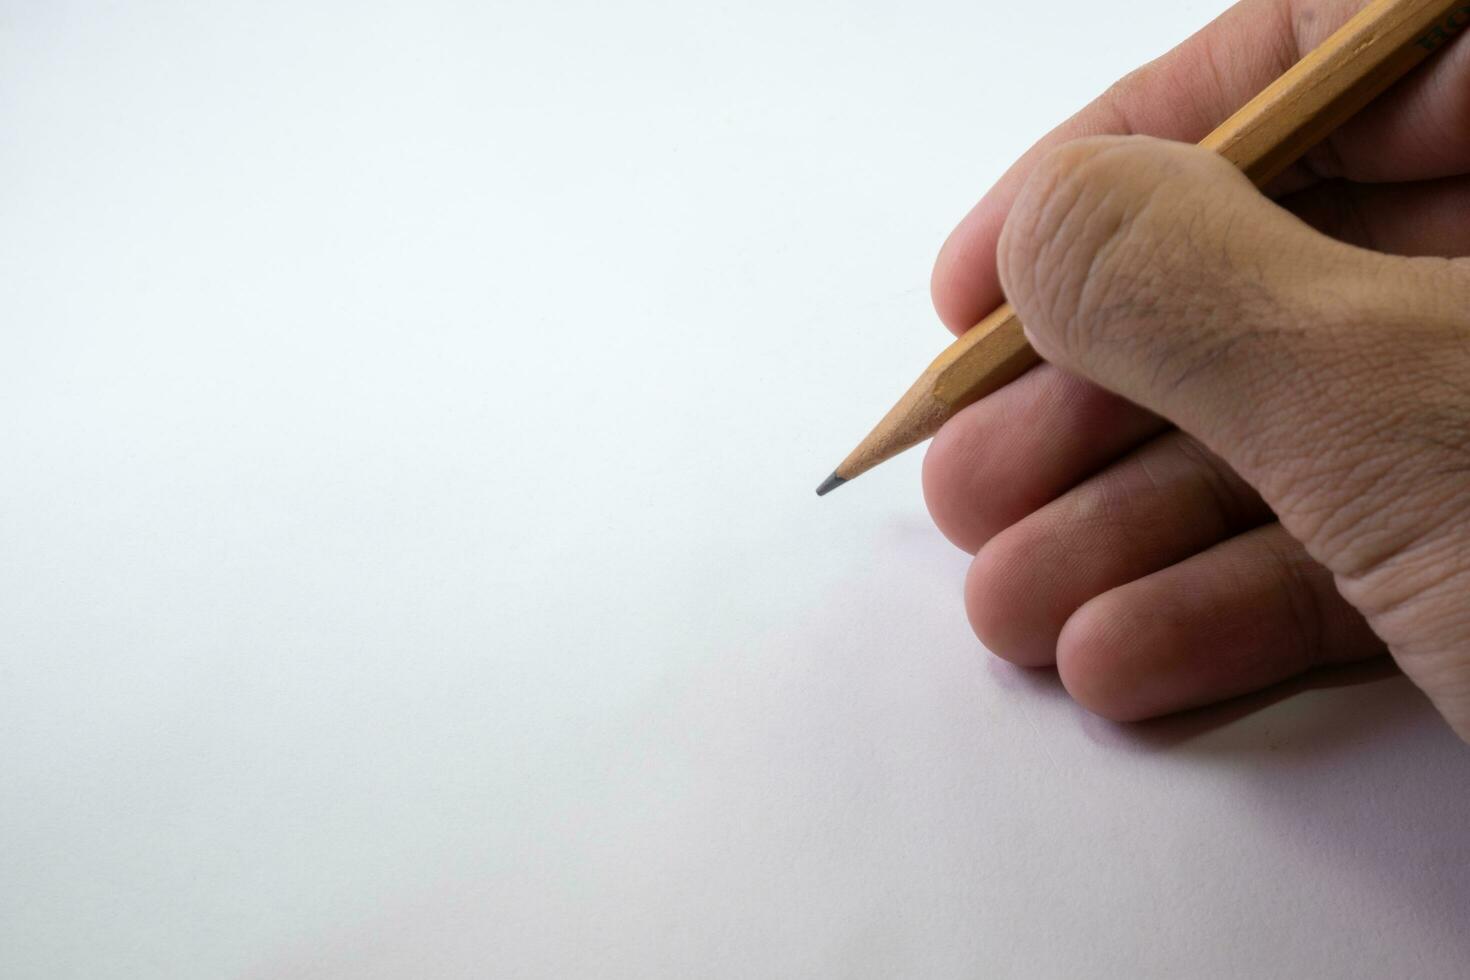 isolado mão segurando uma lápis em branco foto